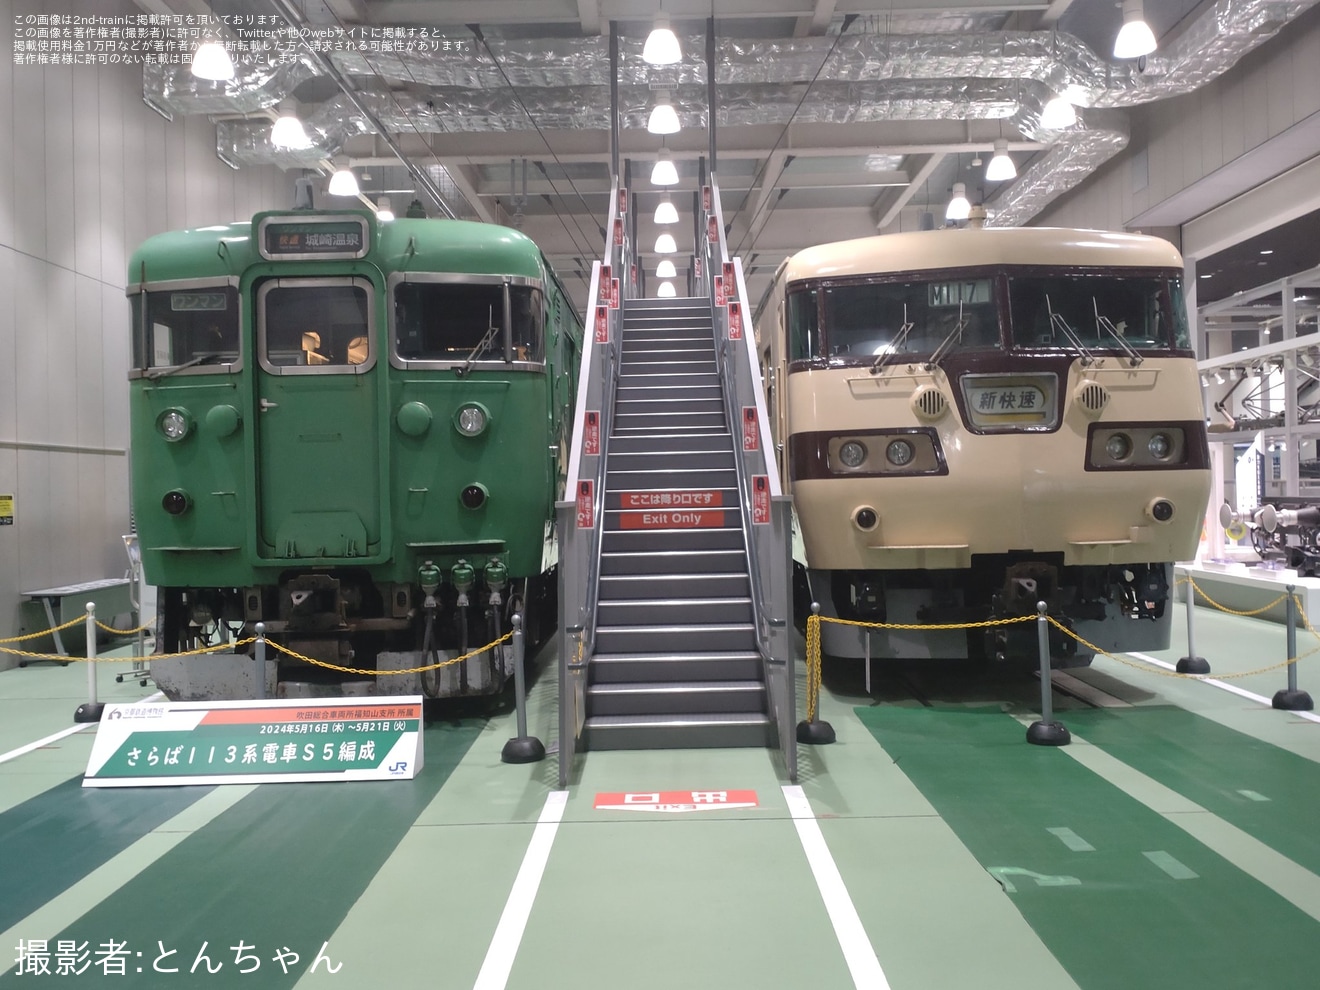 【JR西】京都鉄道博物館「113系5300番台」特別展示開催の拡大写真